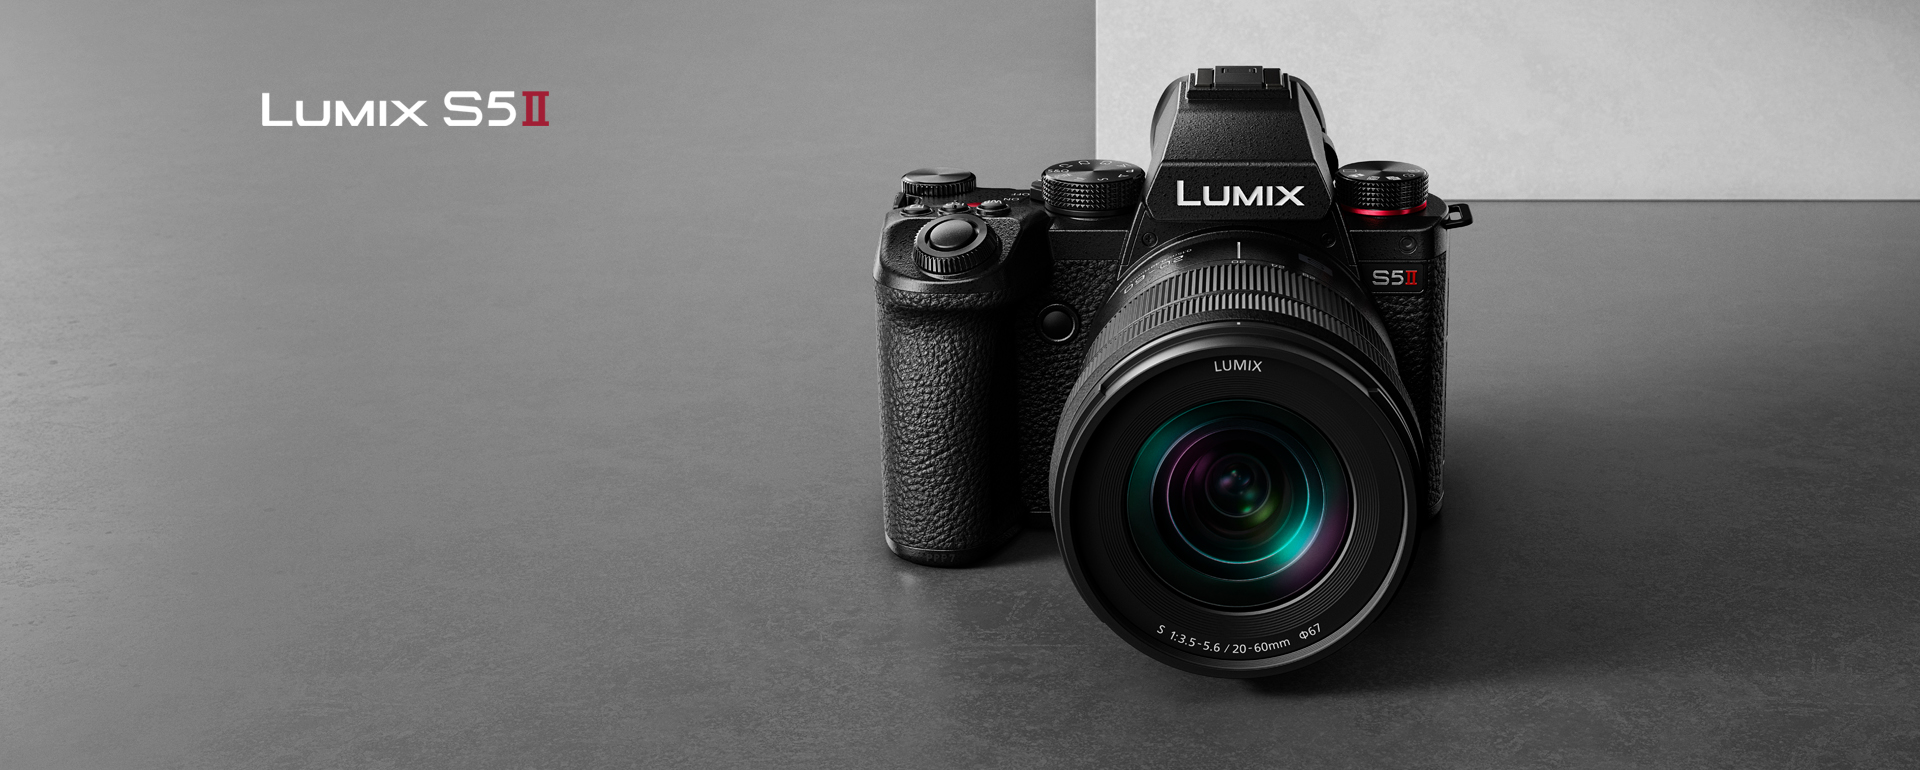 Skup się na tym, co ważne, dzięki nowemu aparatowi LUMIX S5MII